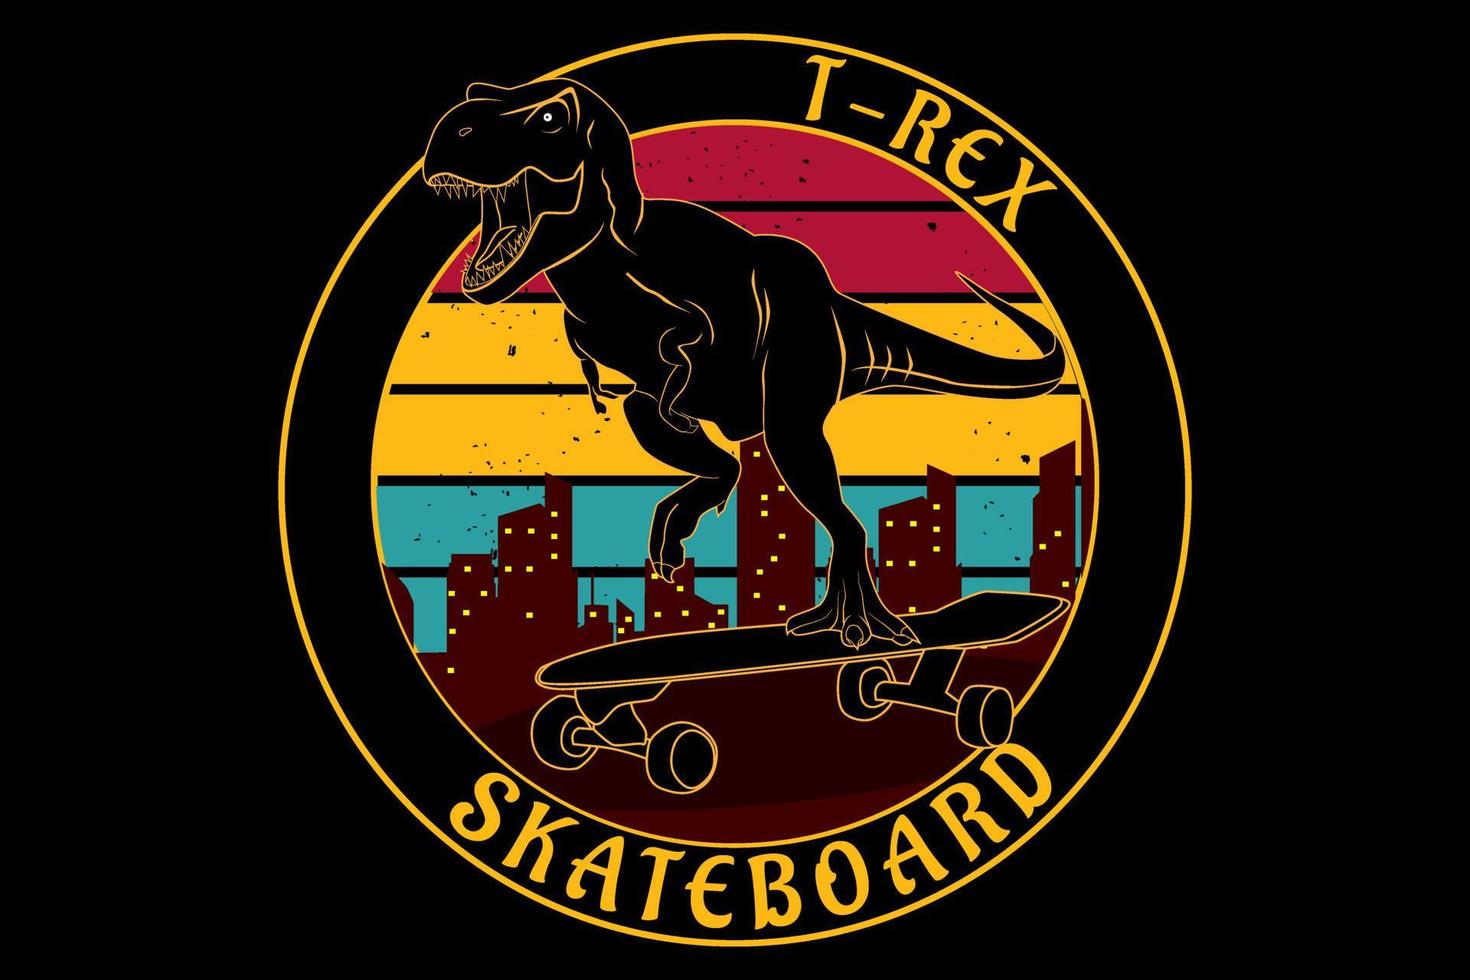 t rex skateboard vintage retro design vektor